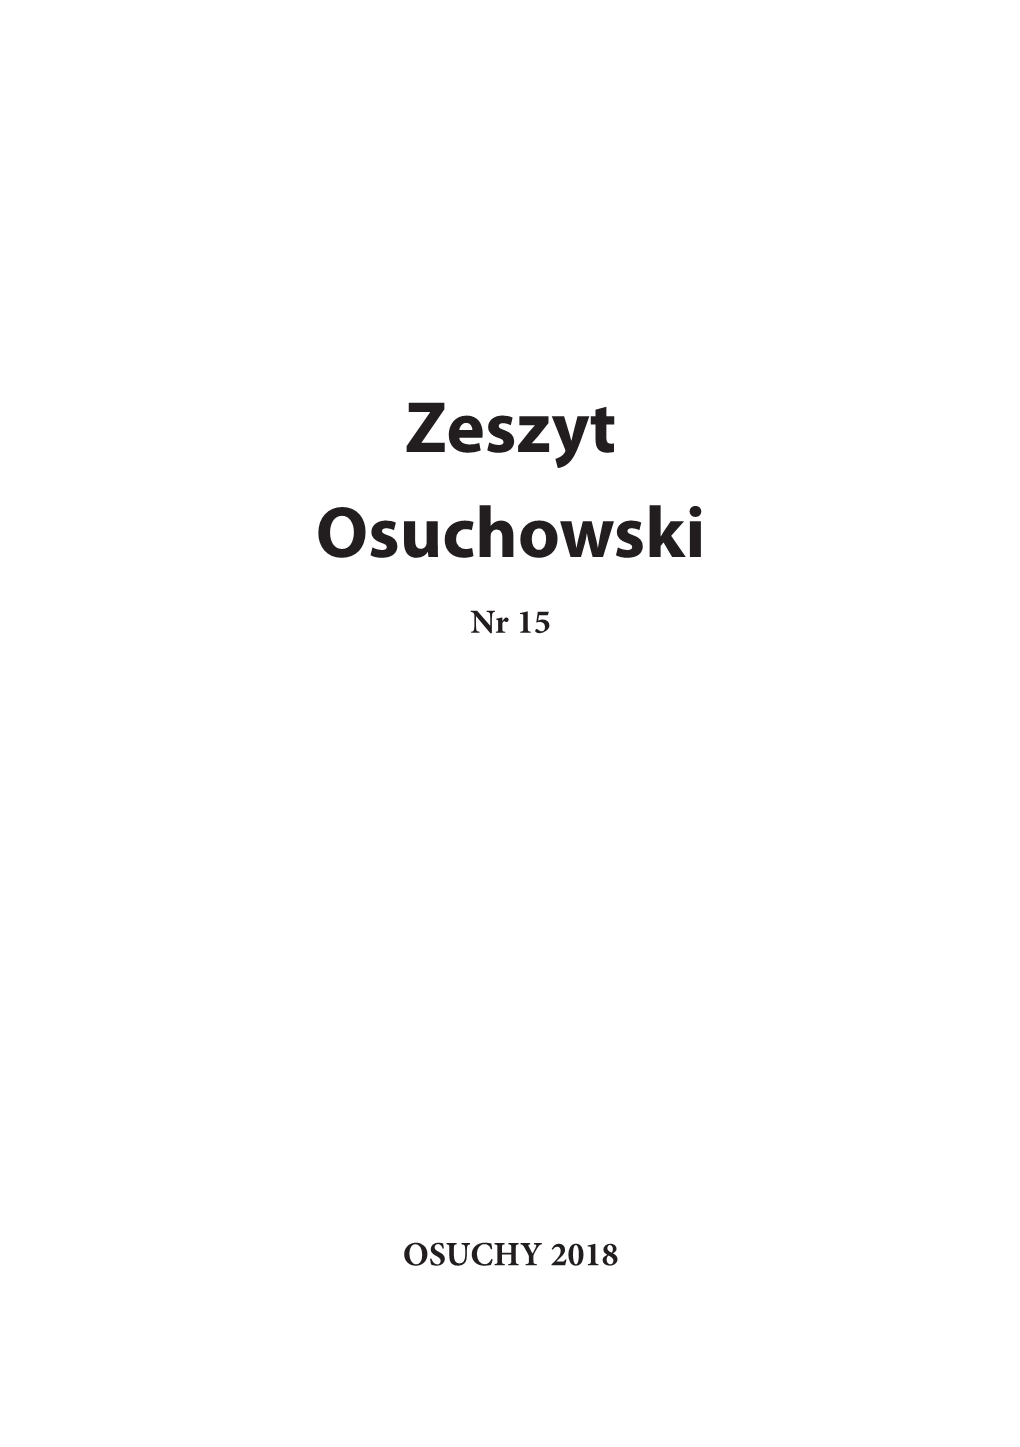 Zeszyt Osuchowski